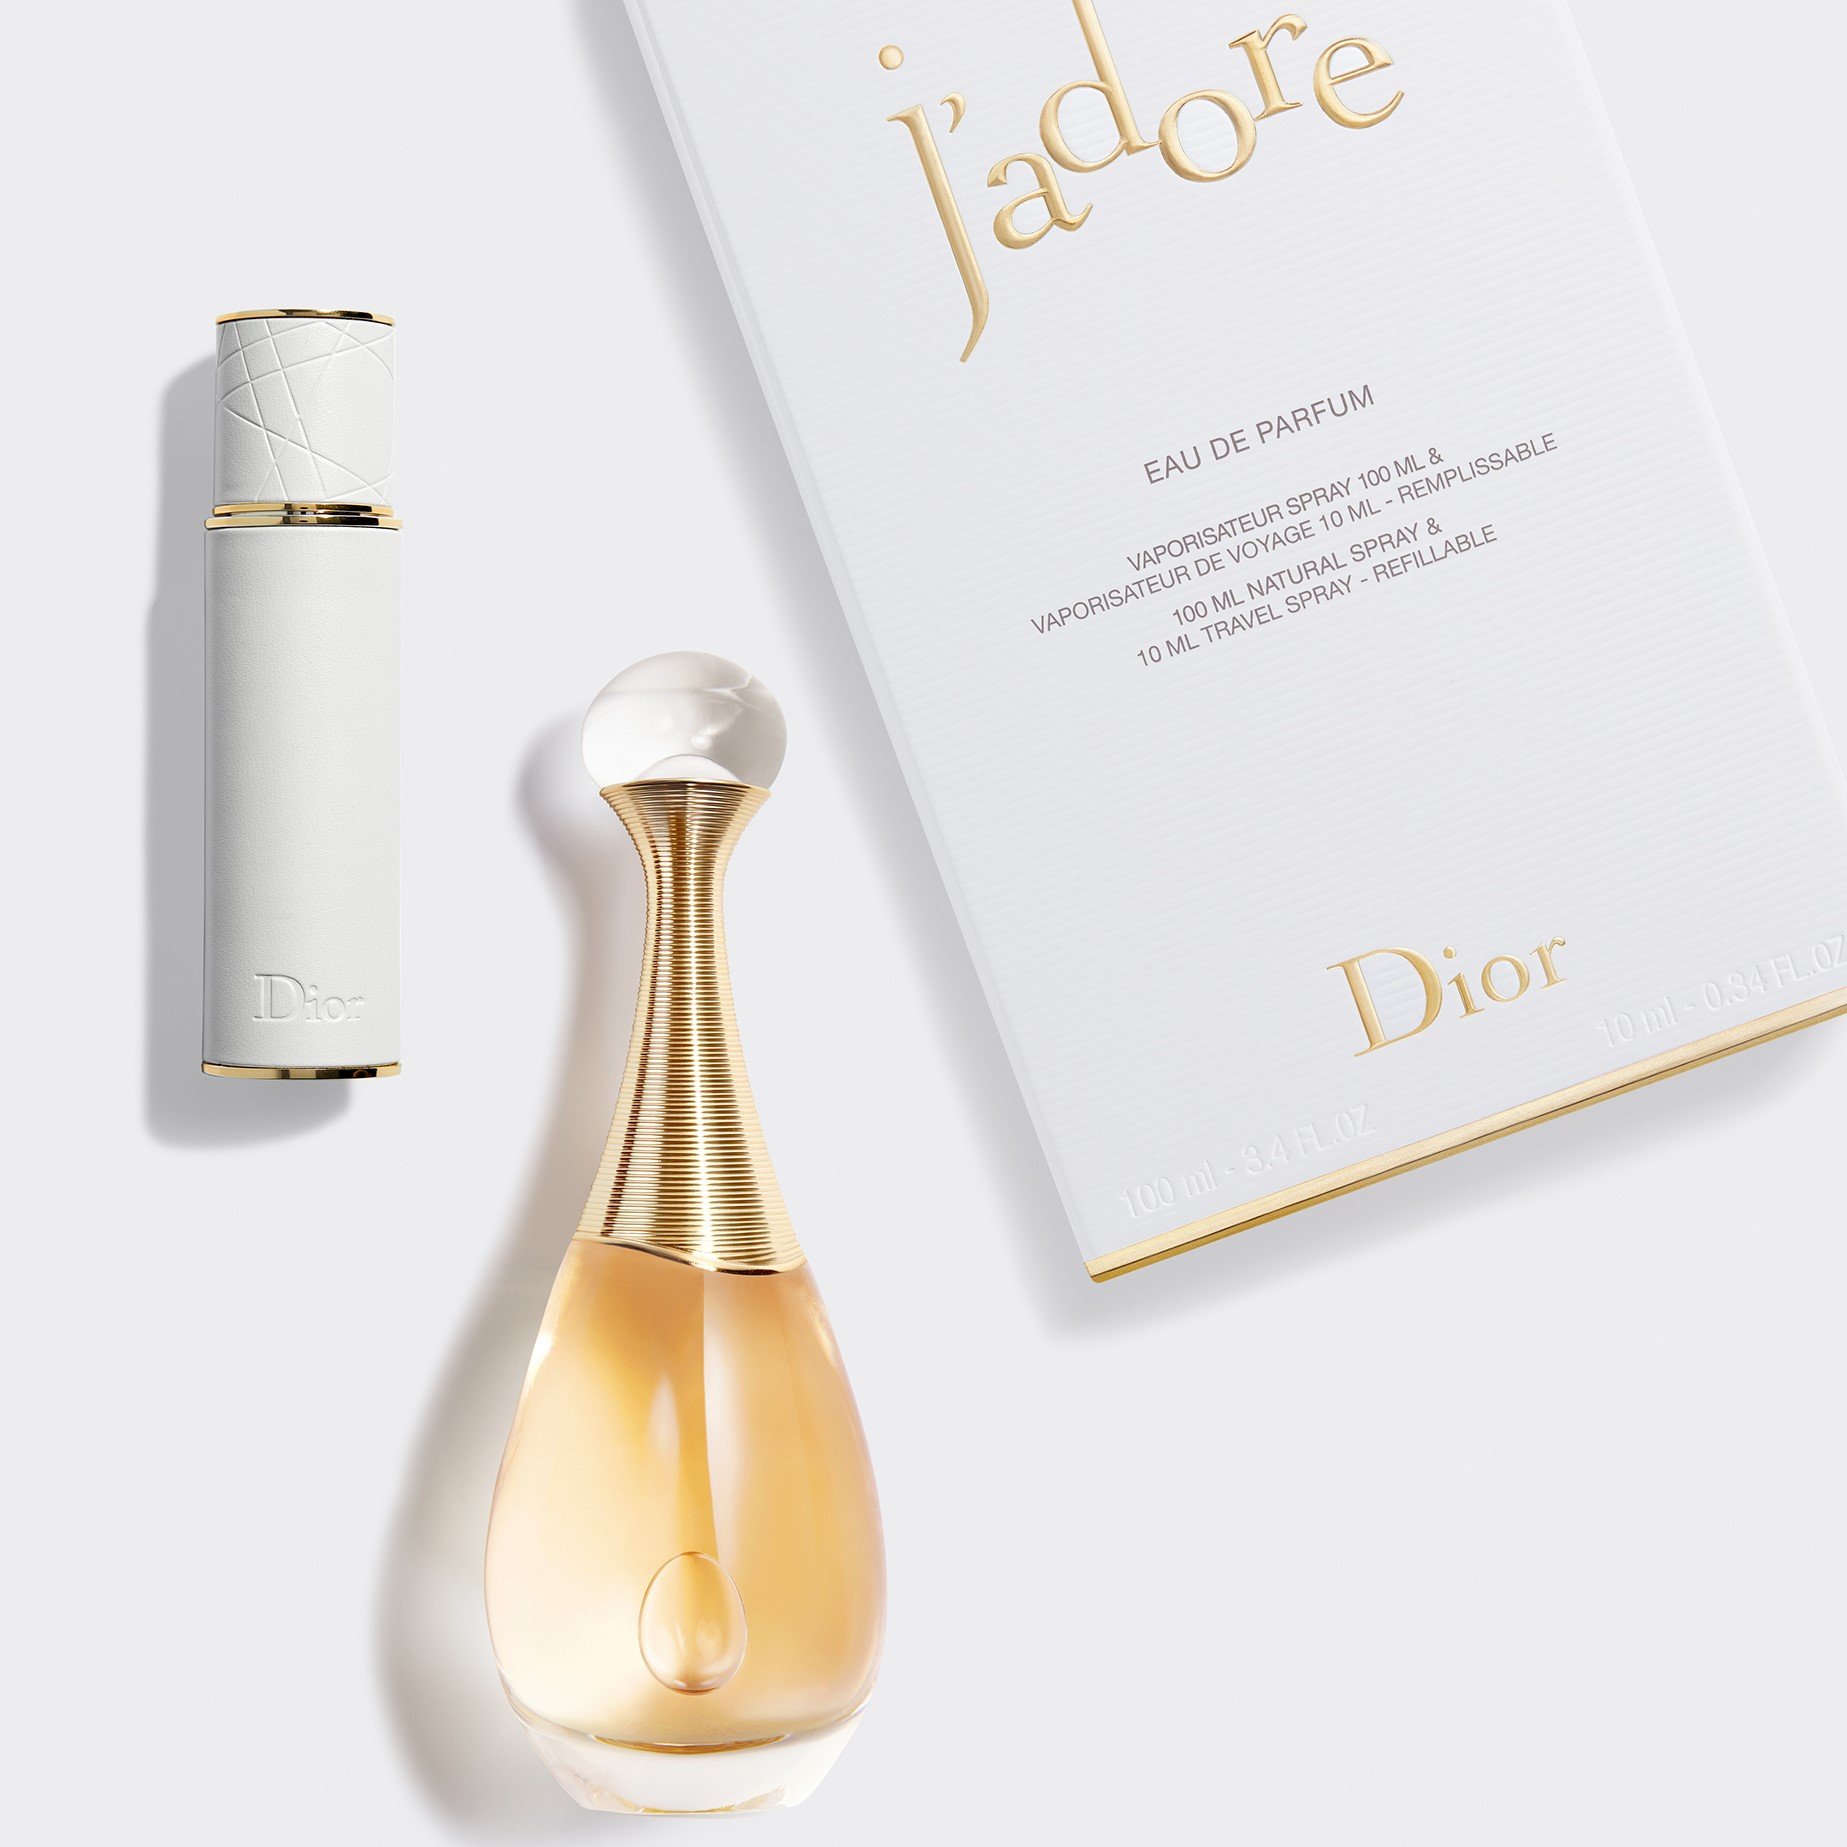 JAdore Extrait de Parfum 2014 Dior  LaParfumerie Лучший парфюмерный  форум России